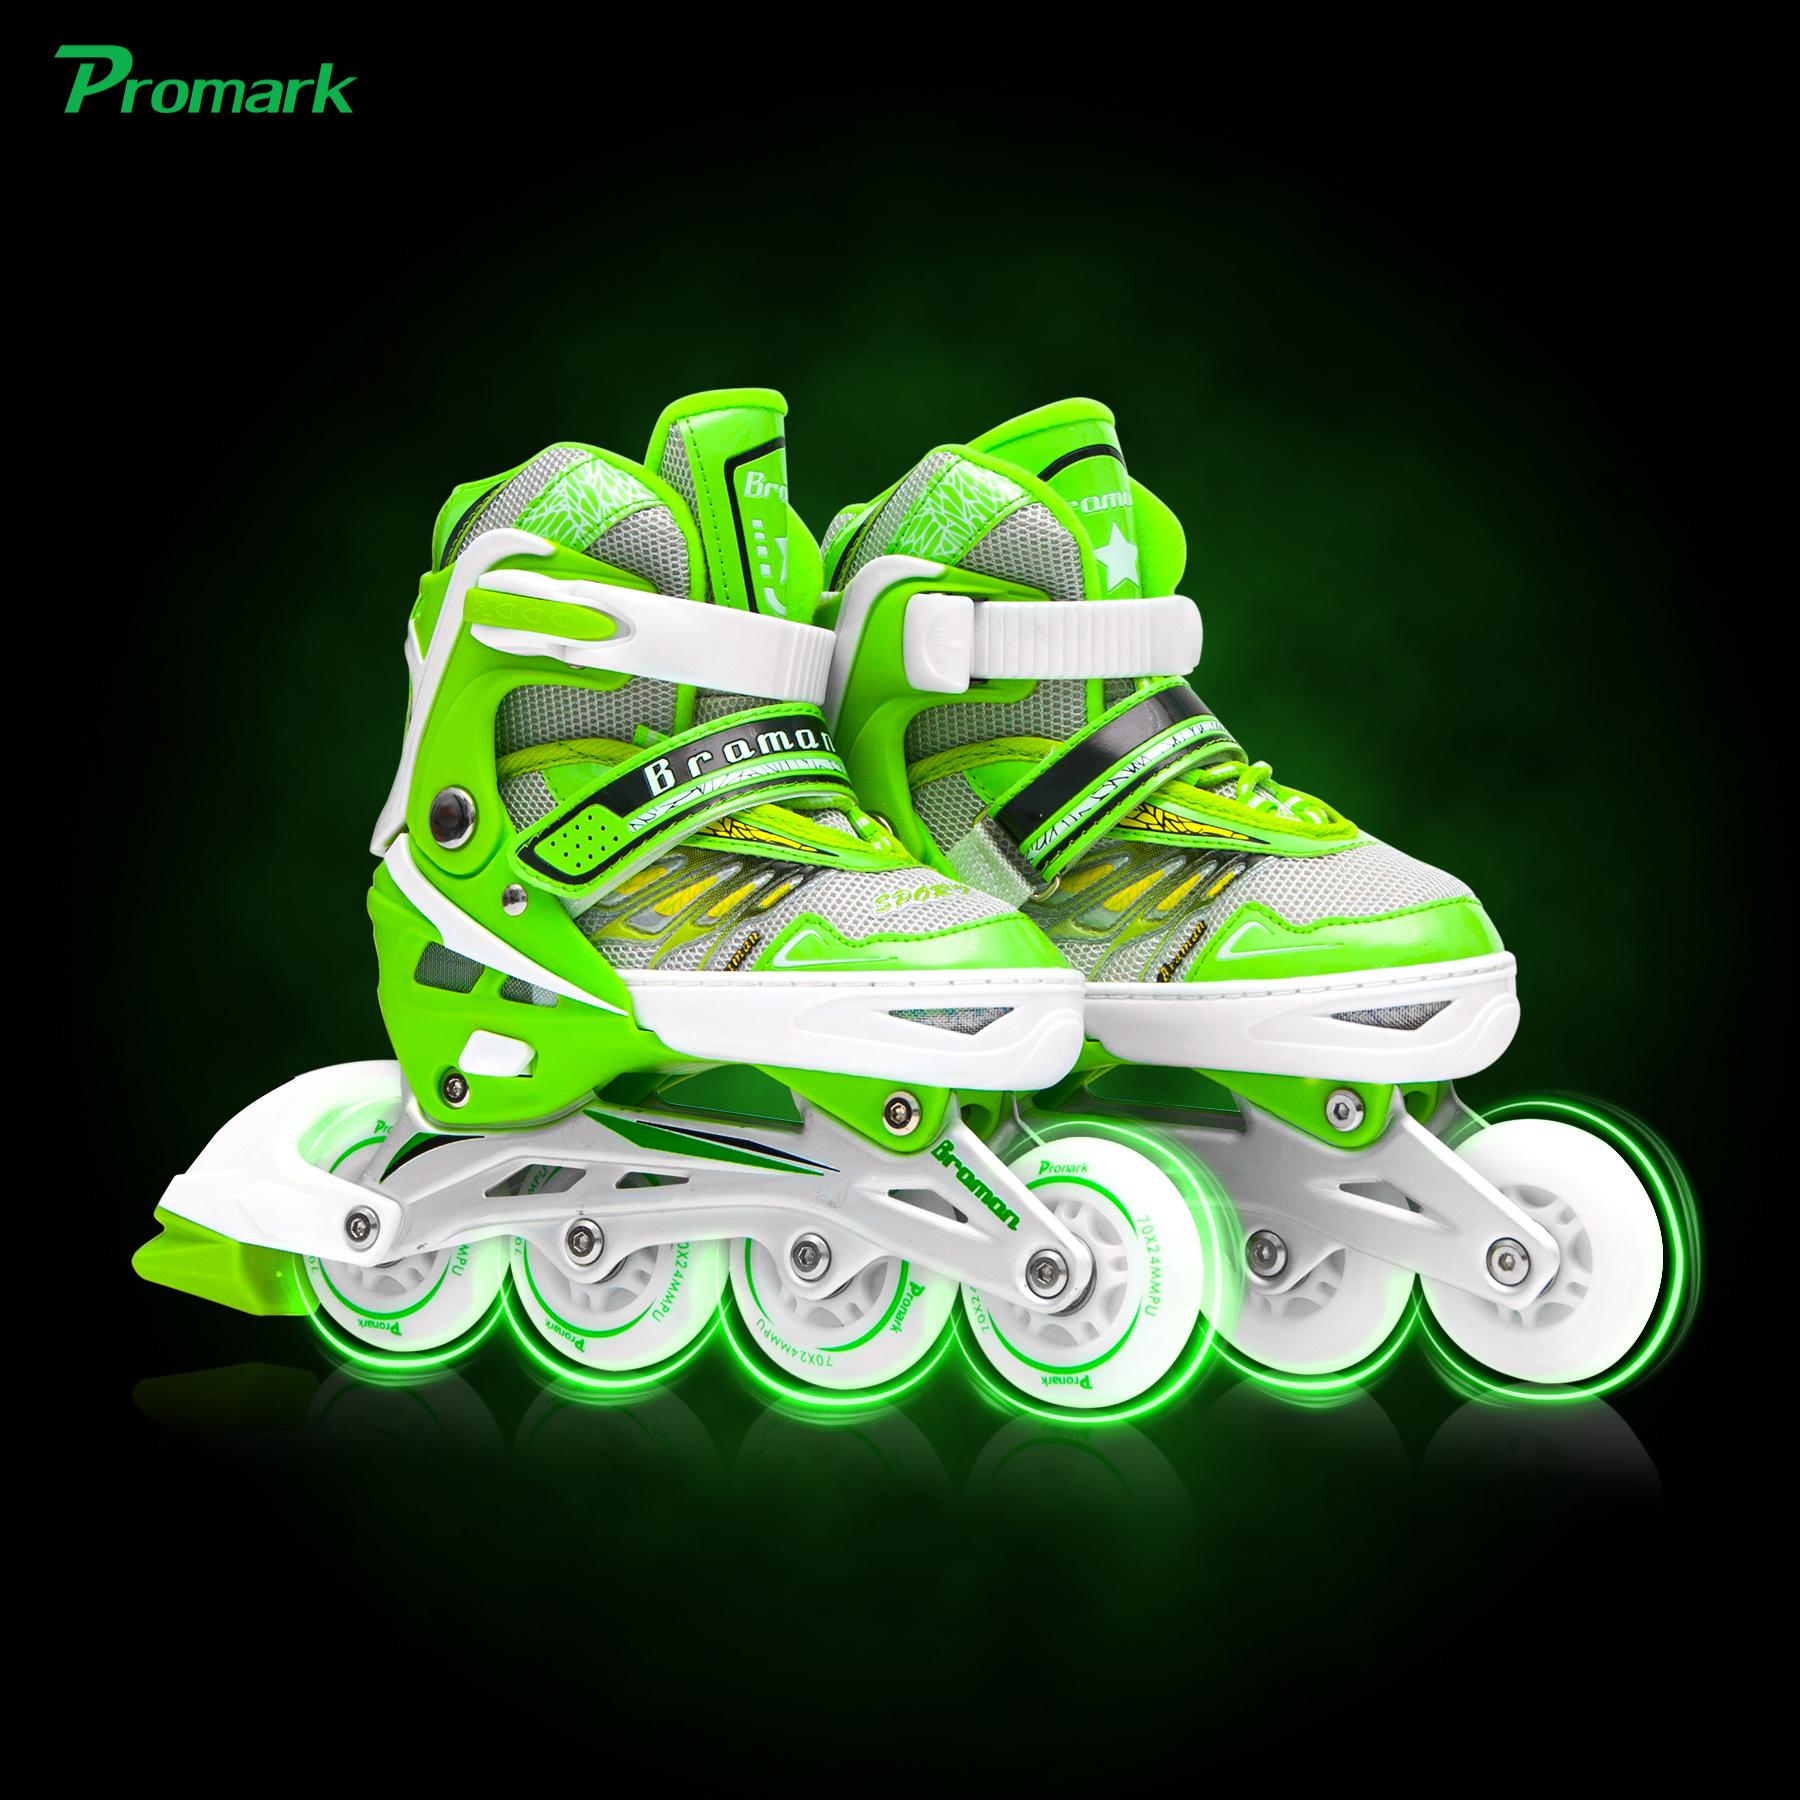 รองเท้าอินไลน์สเก็ต รองเท้าสเก็ต โรลเลอร์เบลด พรีเมี่ยมรับประกัน 1ปี  Limited Edition Inline Skate with 8 Light Wheels & Abec-7 อุปกรณ์ออกกำลังกาย